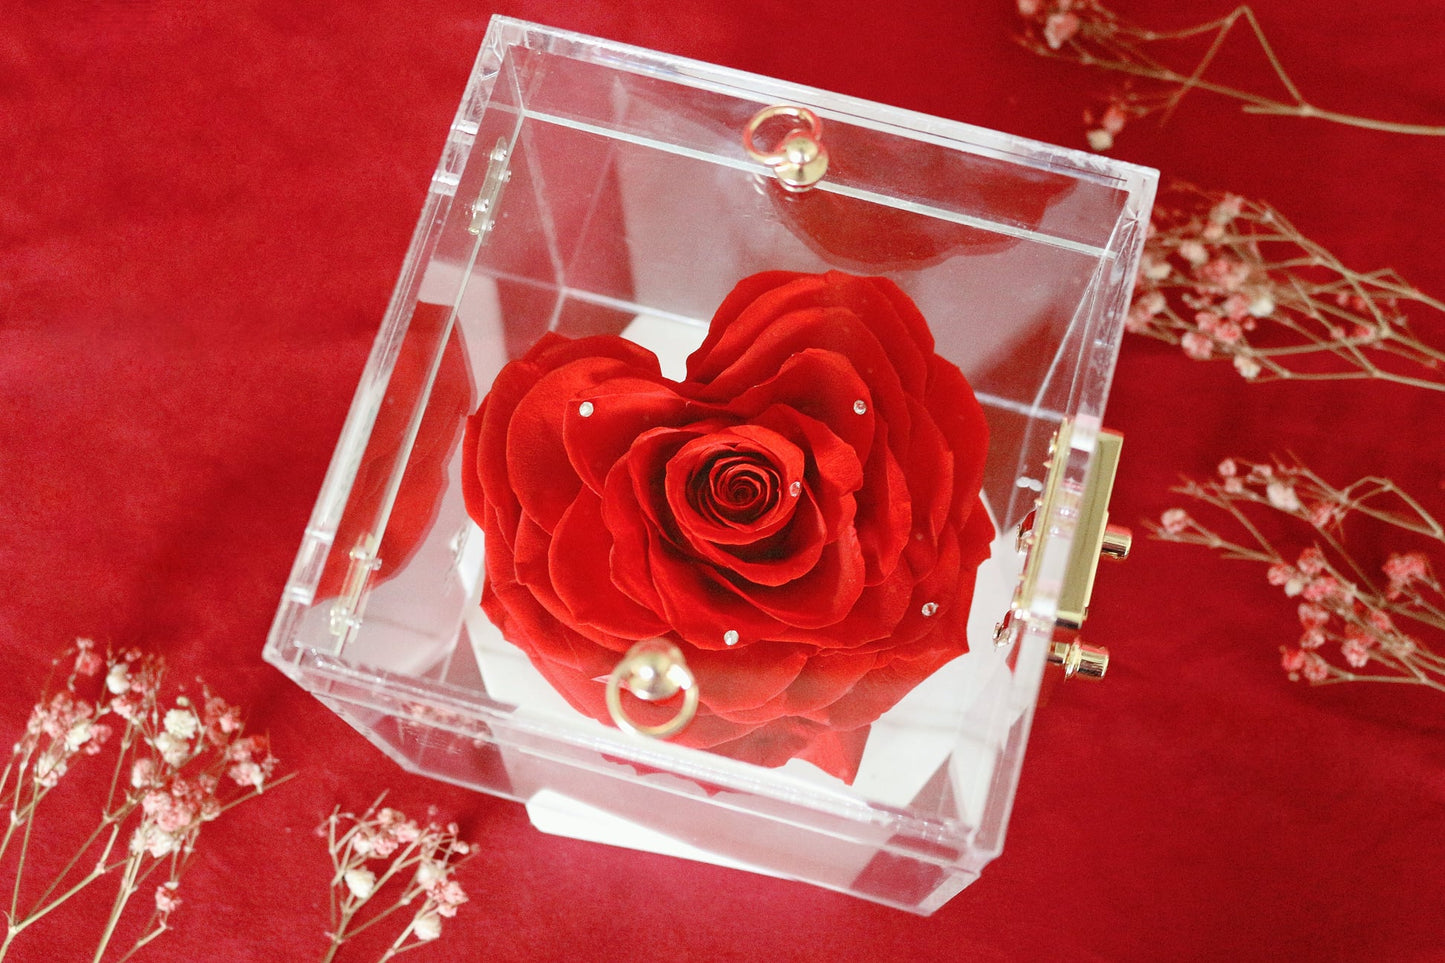 Her Rose - Love Treasure